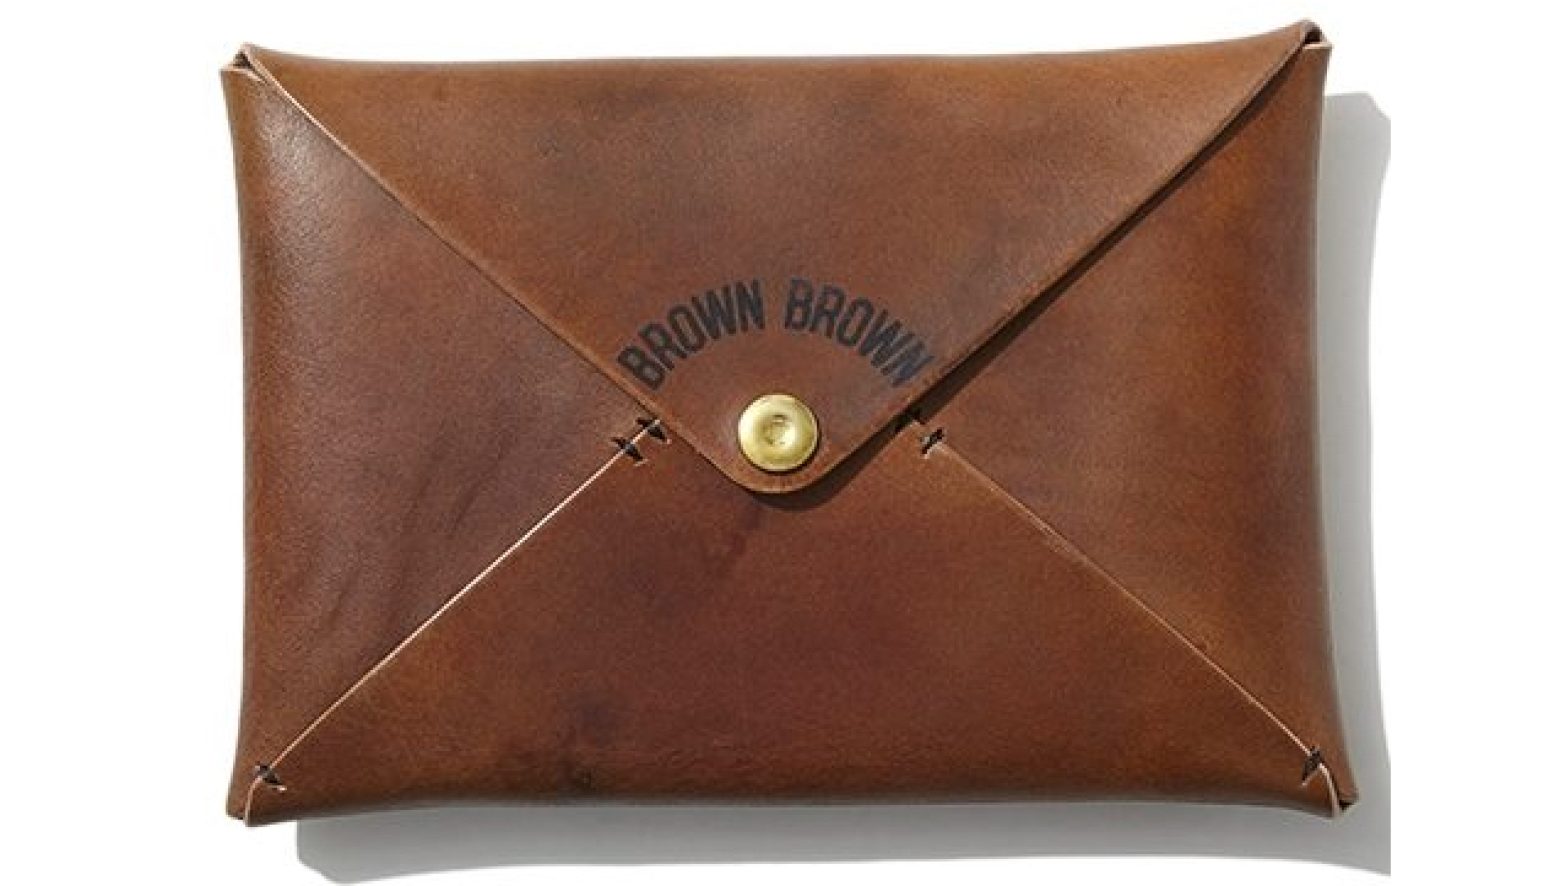 経年変化”にこだわる職人気質のブランド、Brown Brown（ブラウン